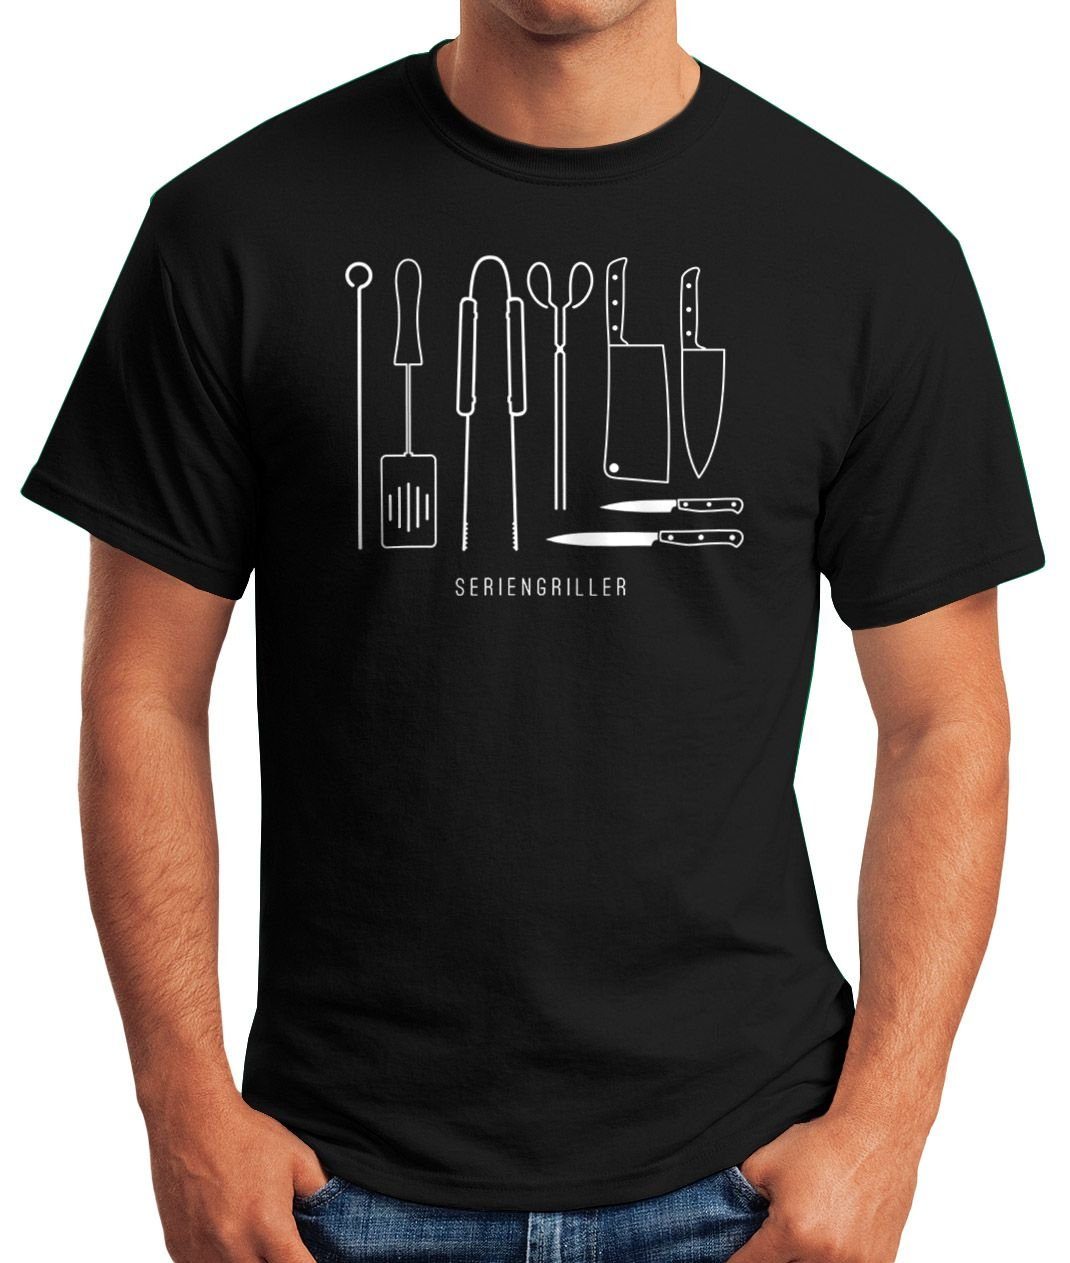 mit MoonWorks Moonworks® Grillen Herren BBQ lustiges zum Grillbesteck T-Shirt Print-Shirt Print Fun-Shirt Seriengriller